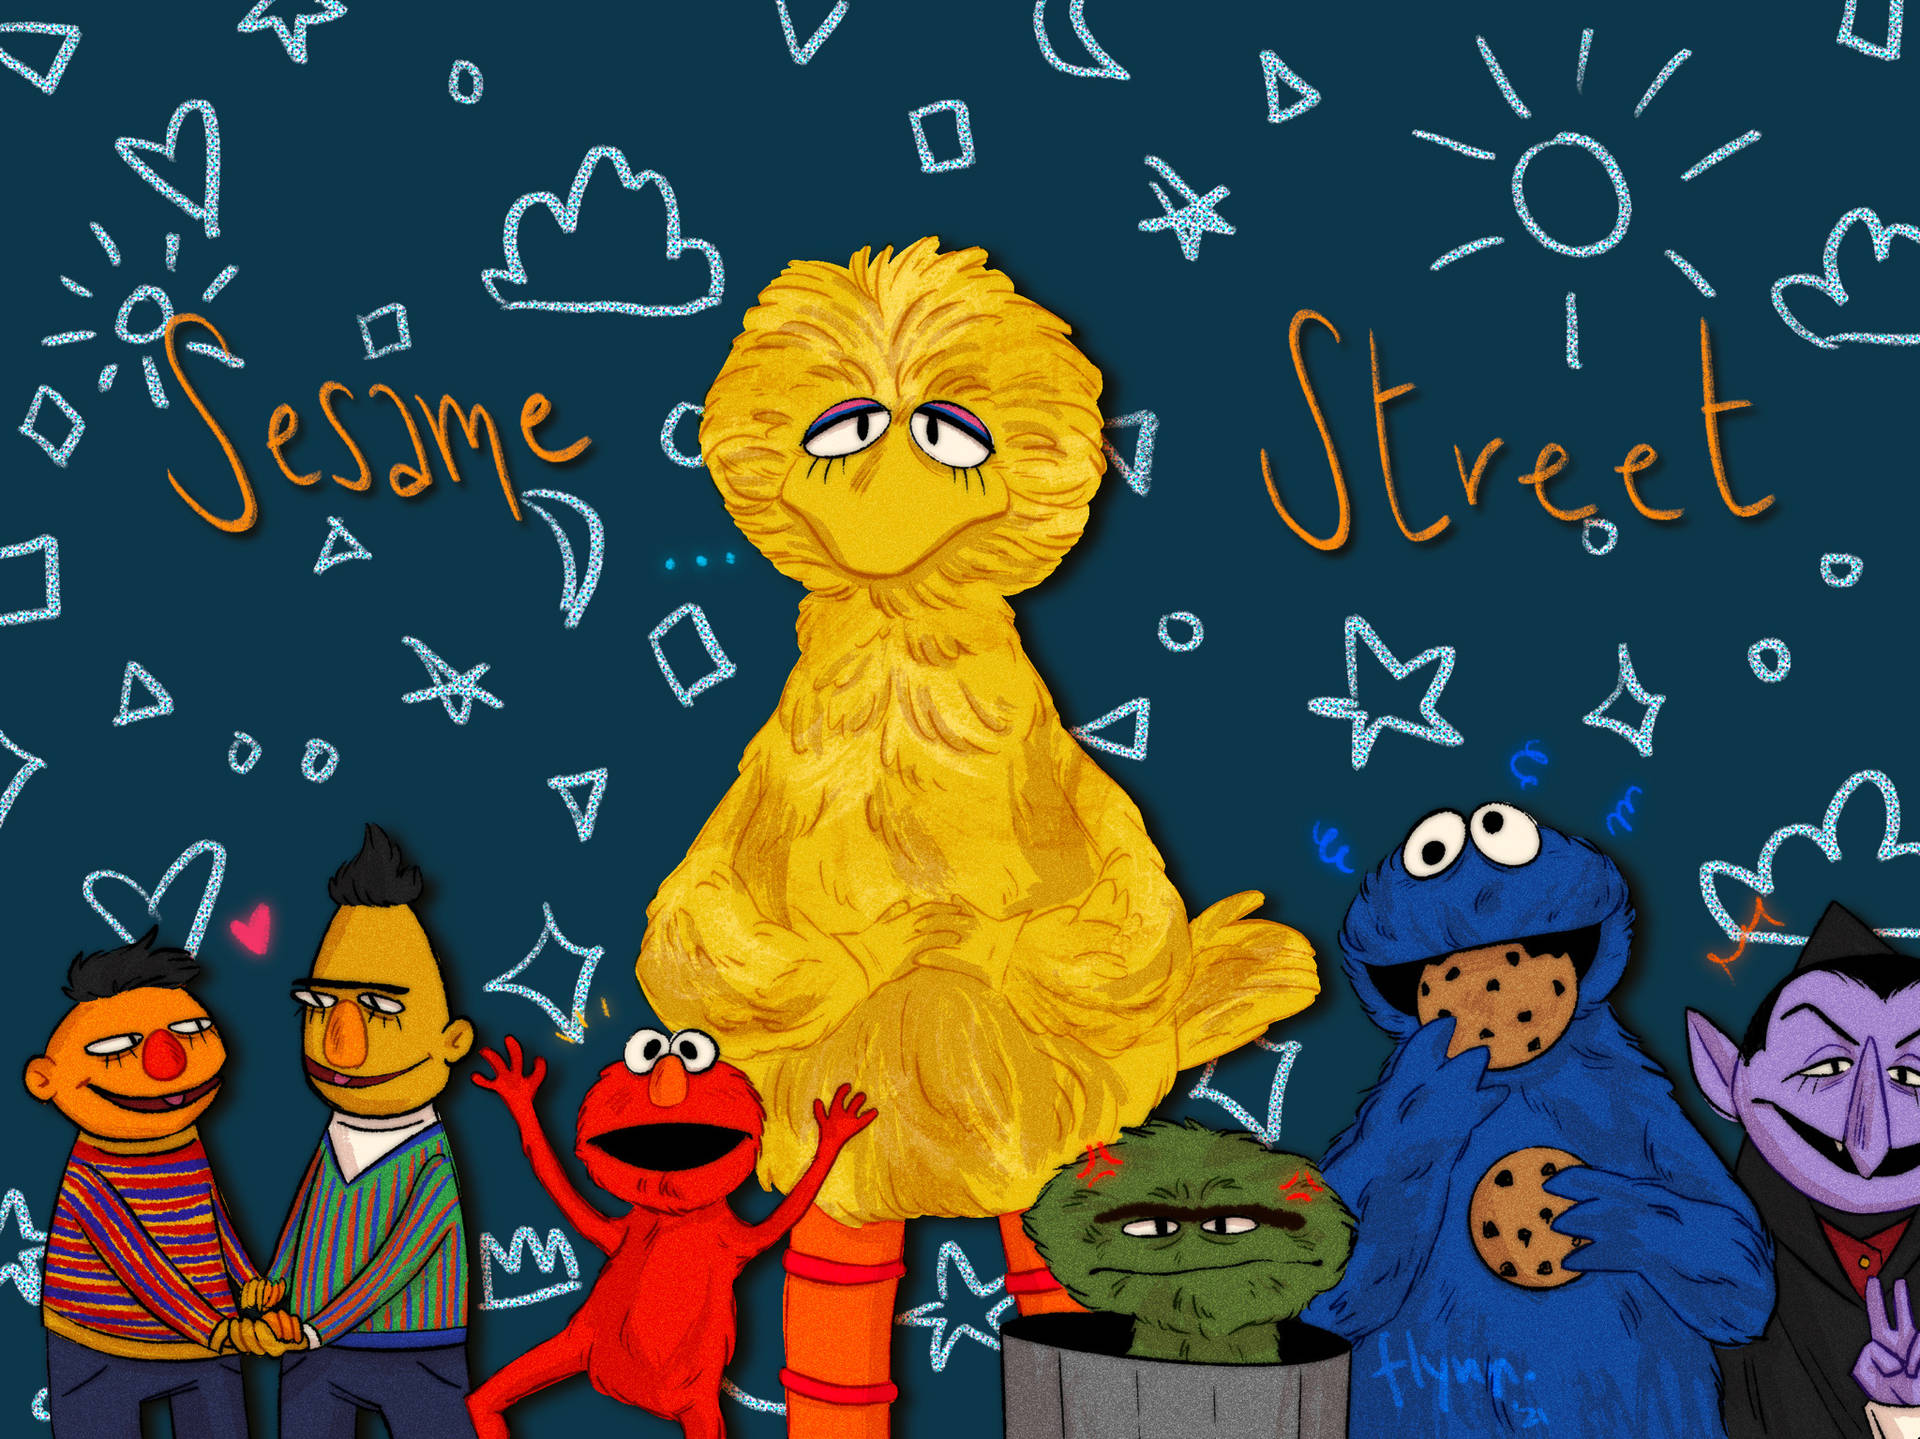 Immagini Di Sesame Street